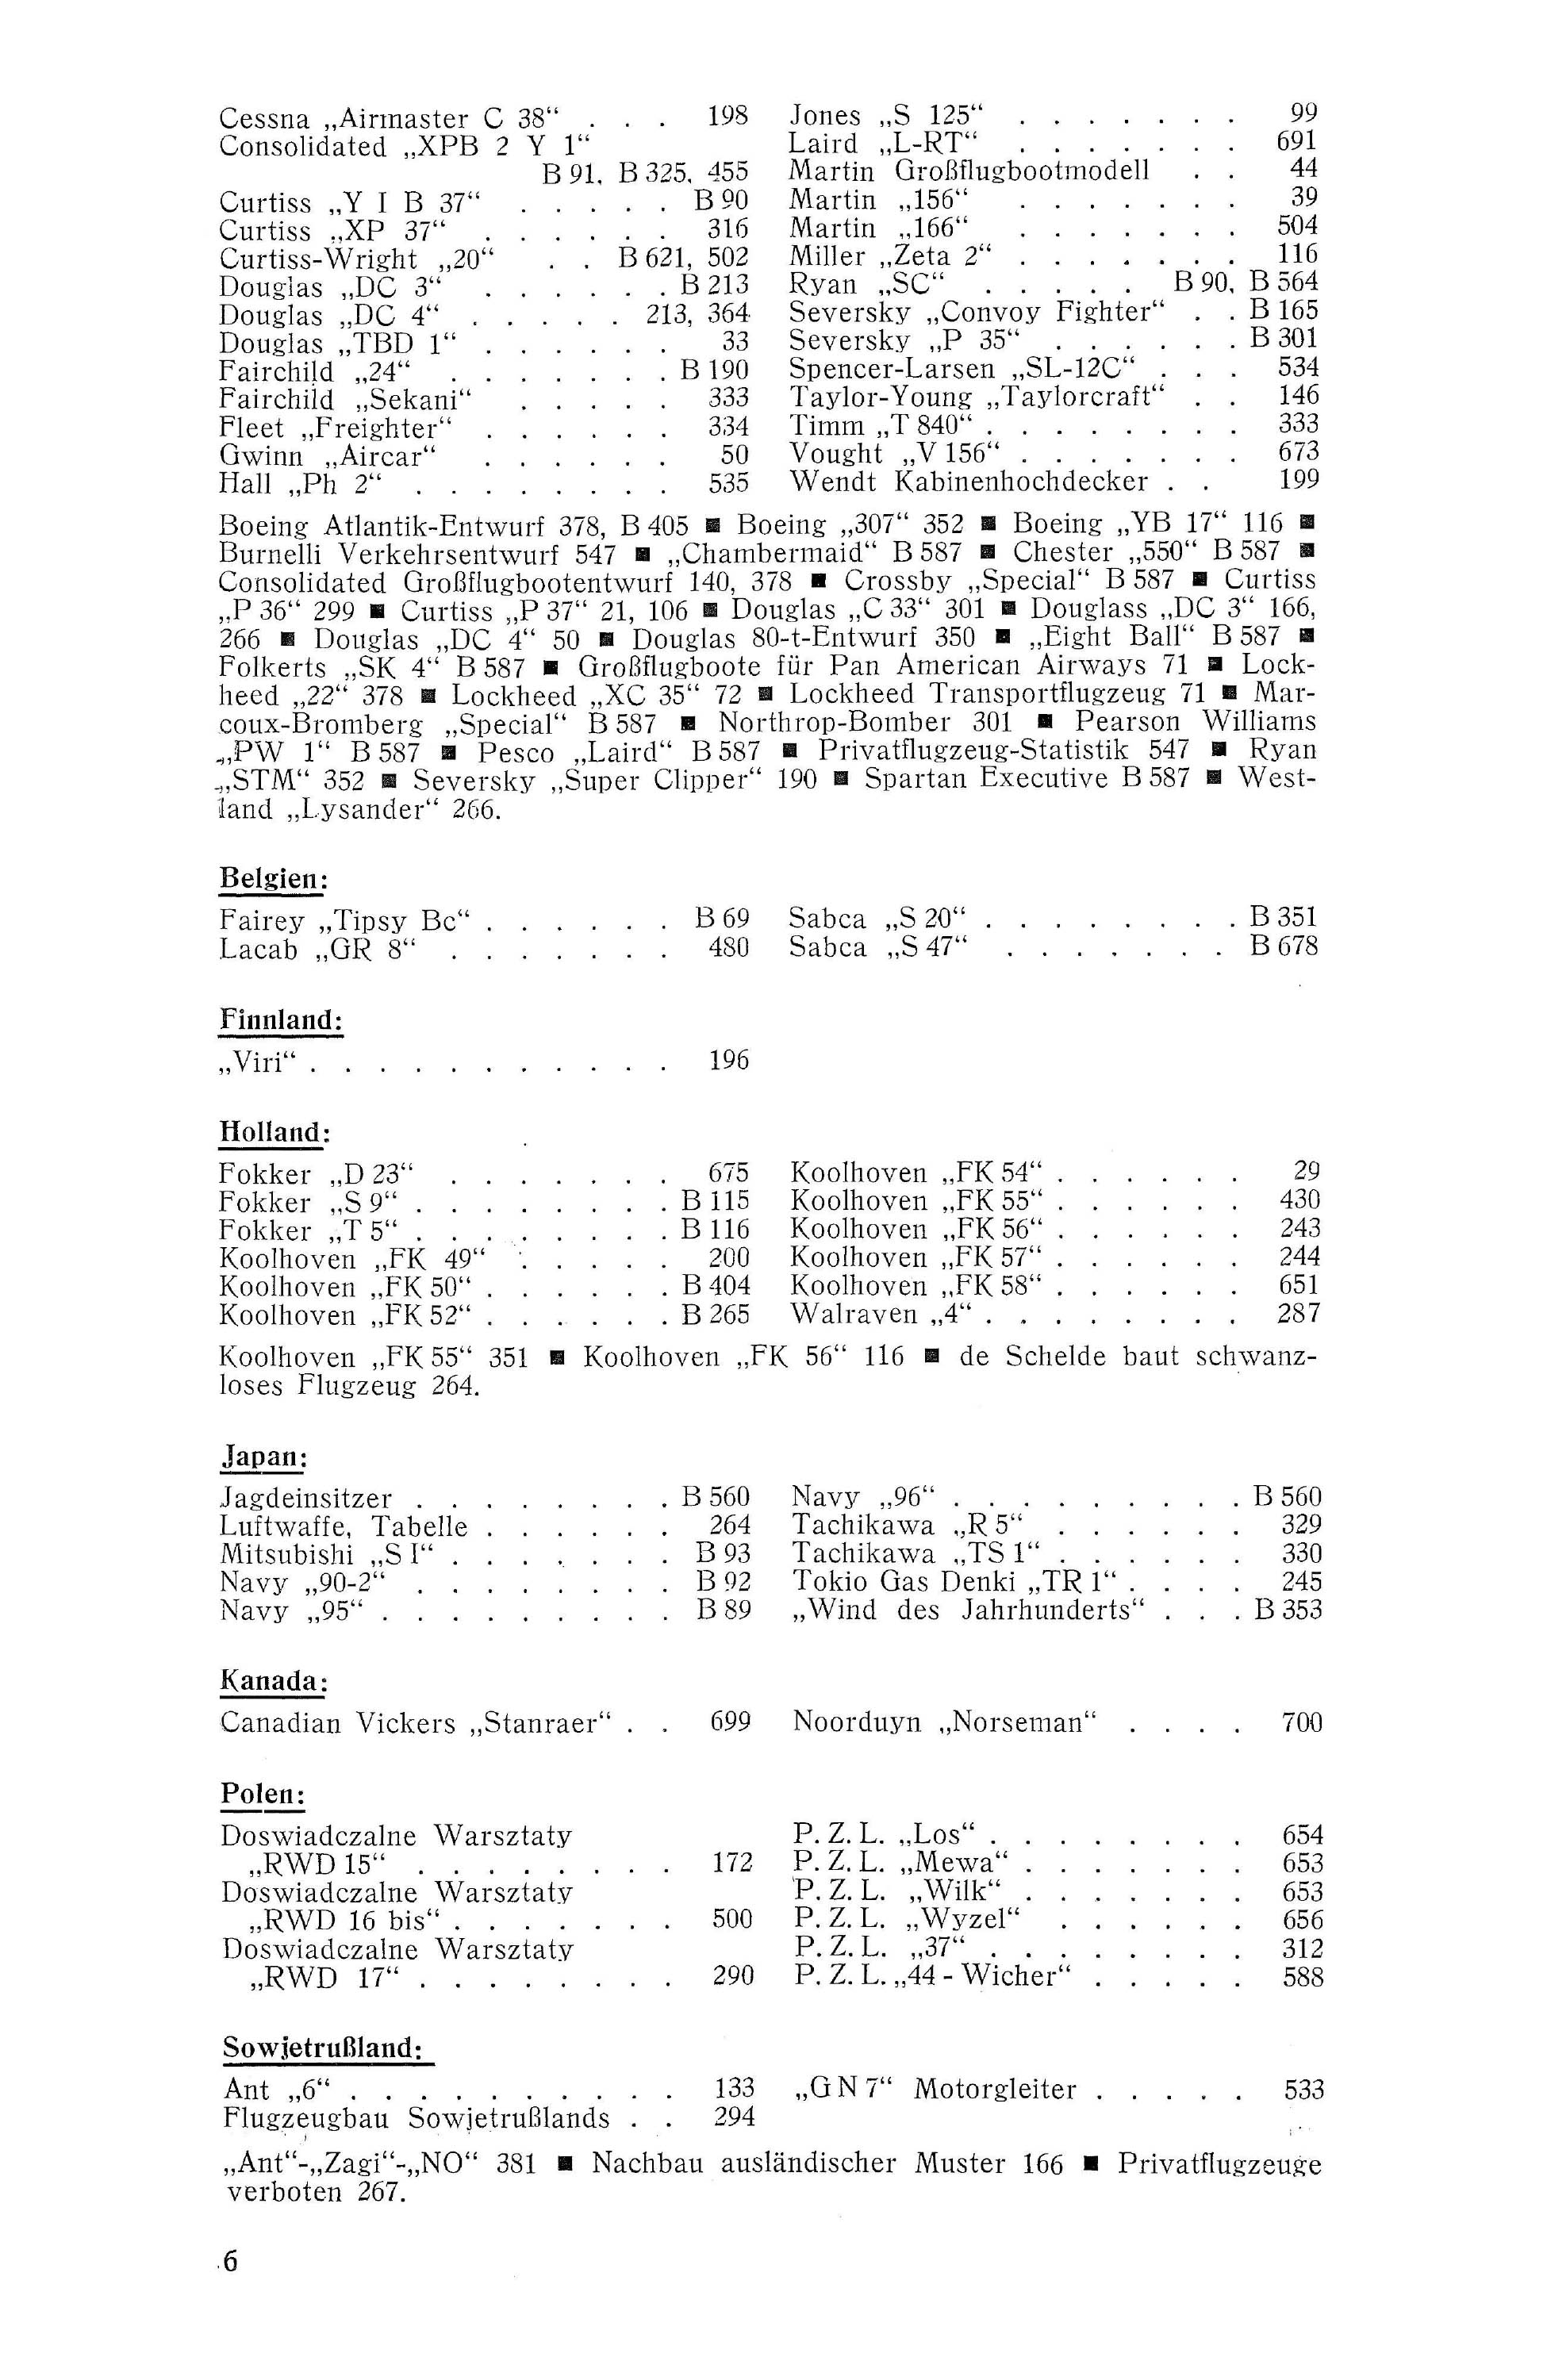 Sachregister und Inhaltsverzeichnis der Zeitschrift Flugsport 1938